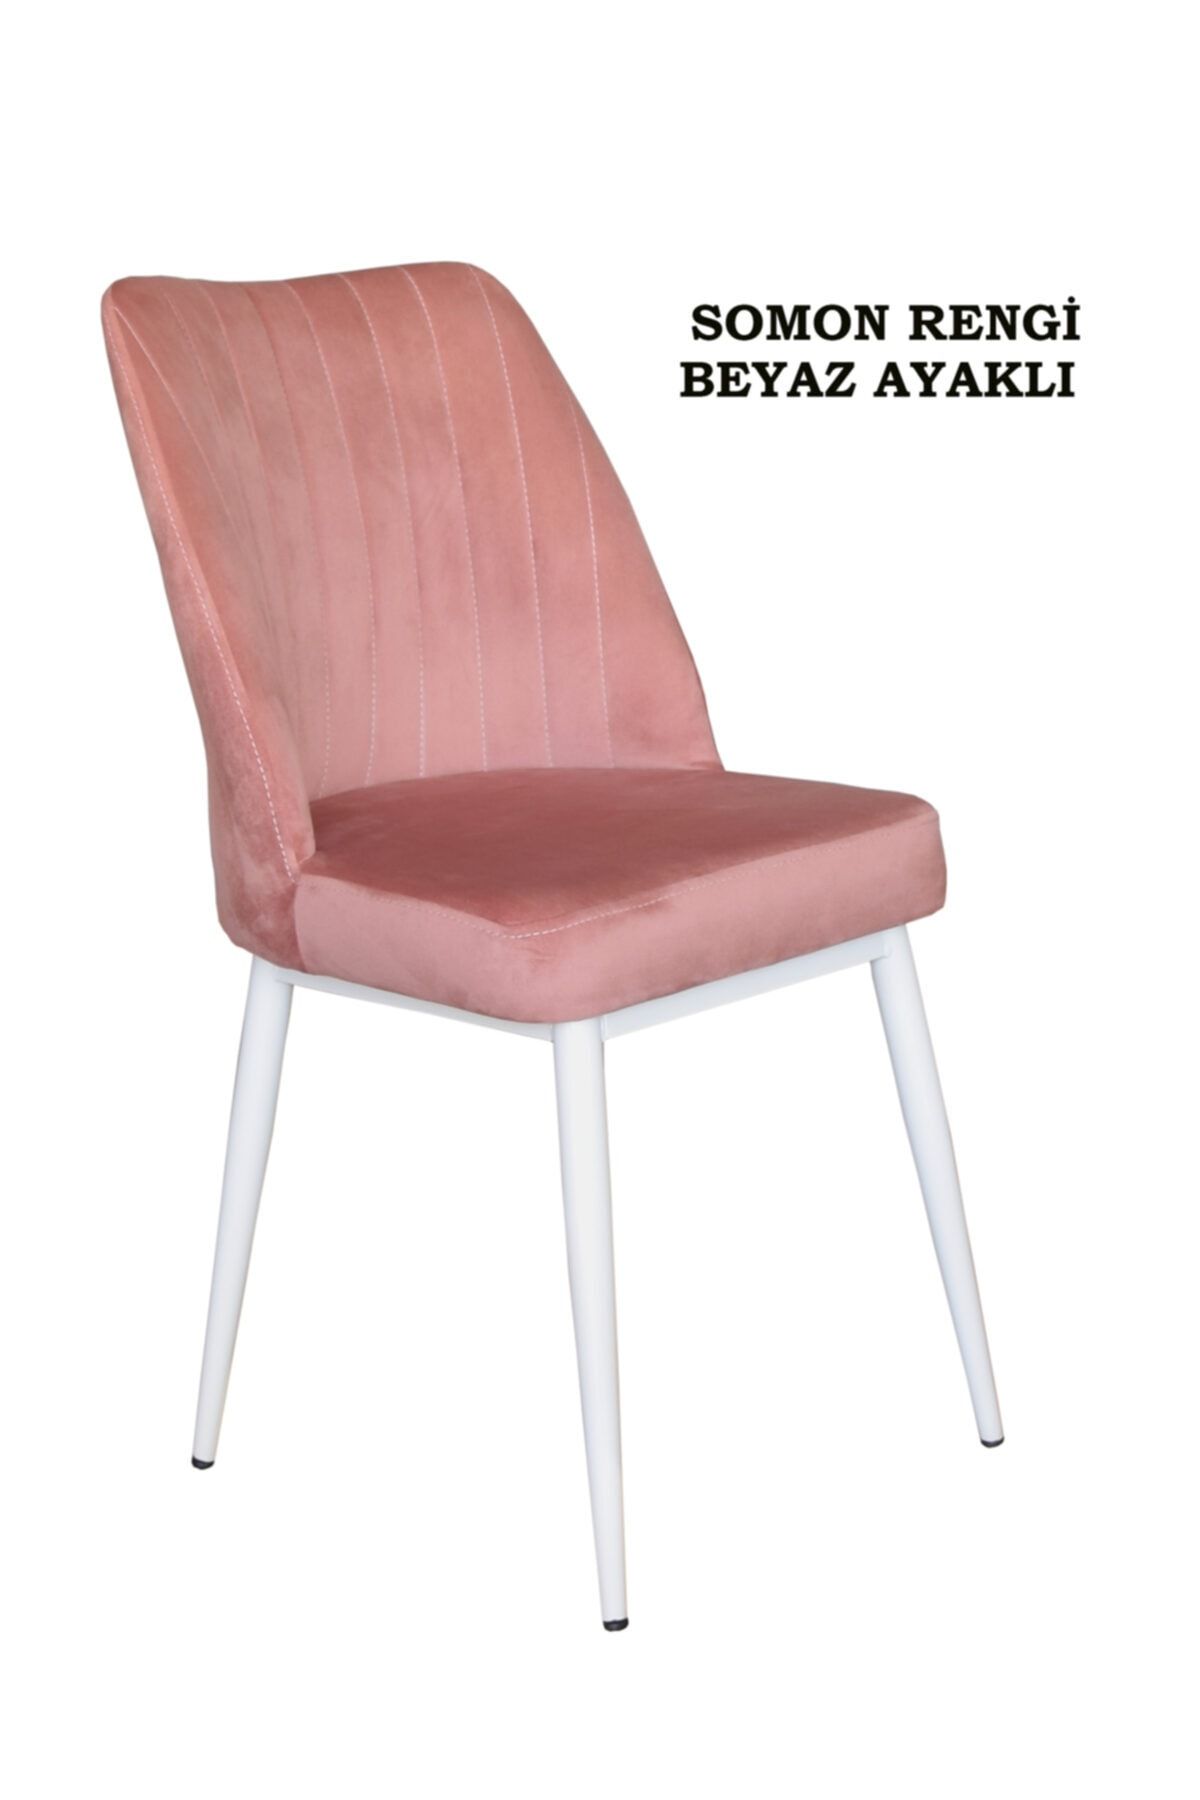 Ankhira Elit Sandalye, Mutfak Ve Salon Sandalyesi, Silinebilir Somon Renk Kumaş, Beyaz Ayaklı